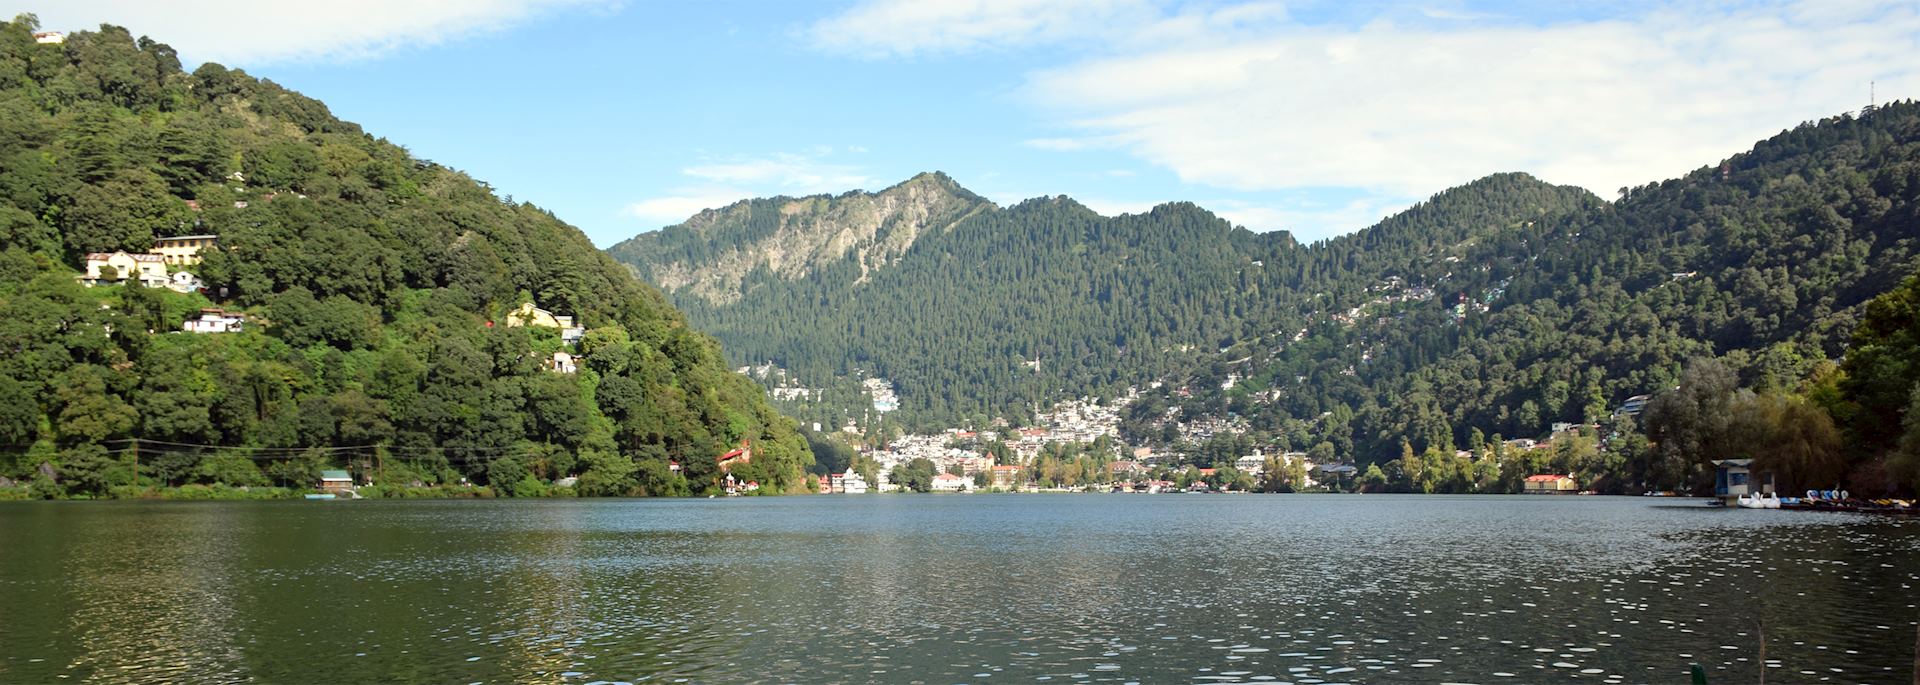 Lake and mountain view in Nainital